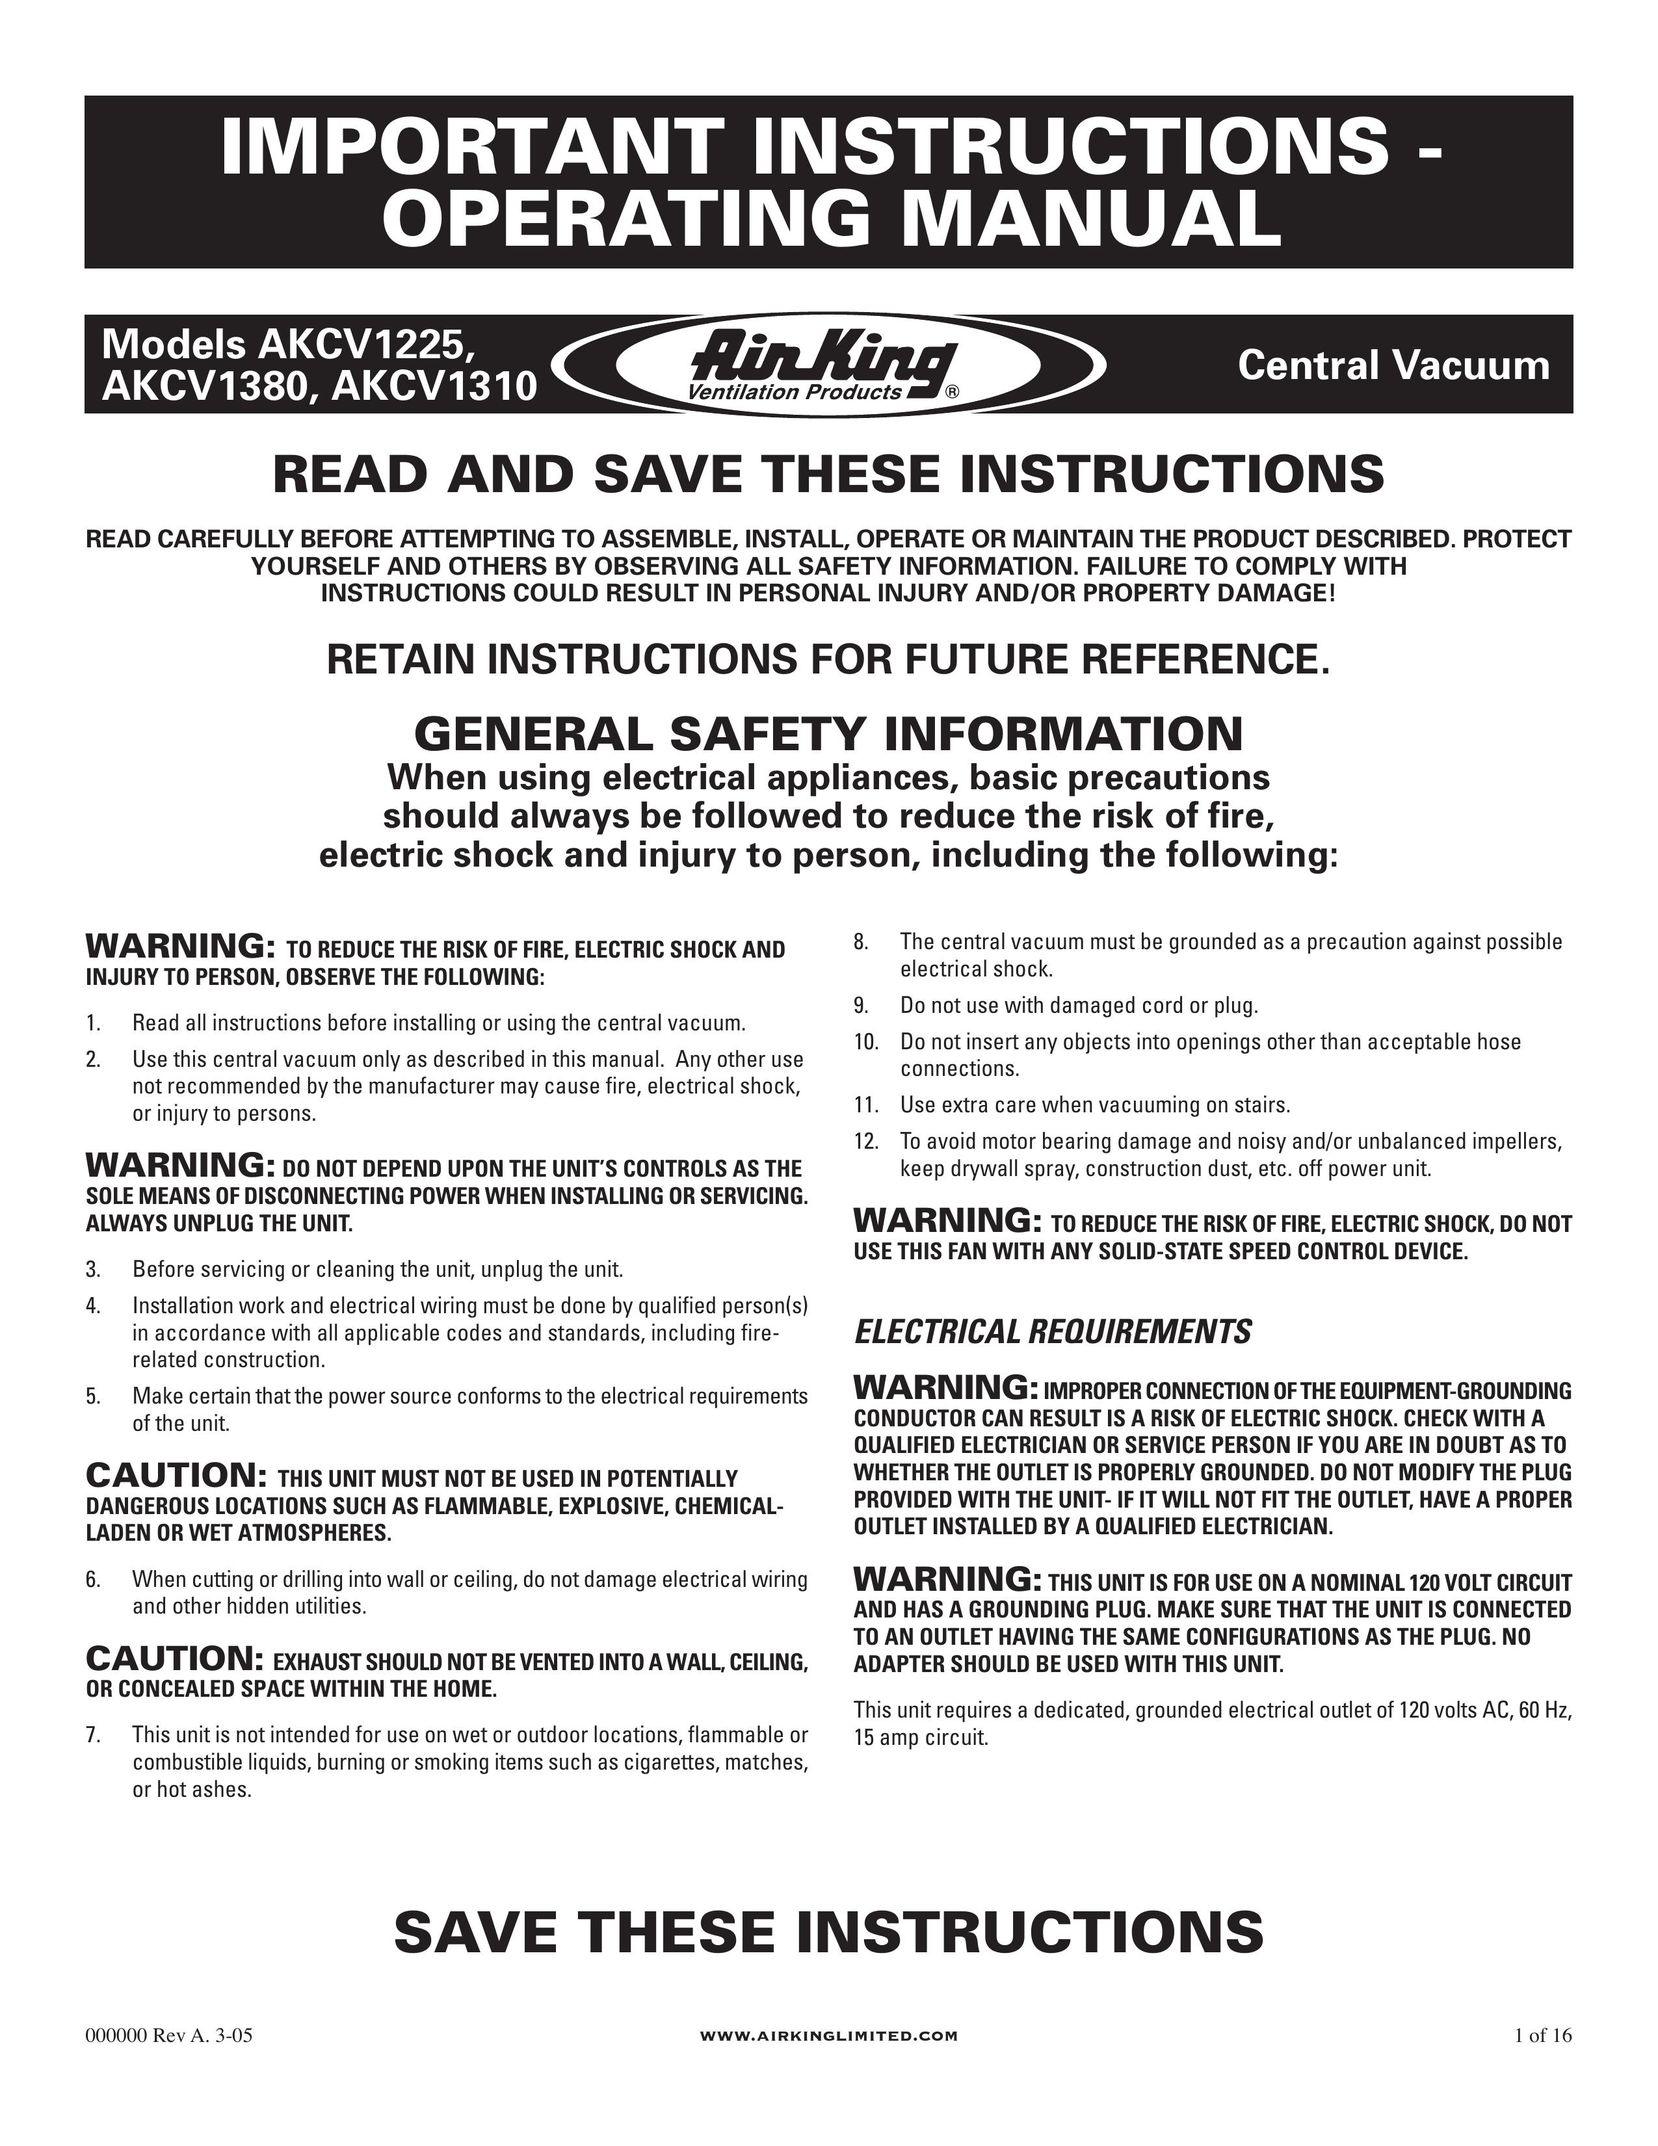 Air King AKCV1310 Vacuum Cleaner User Manual